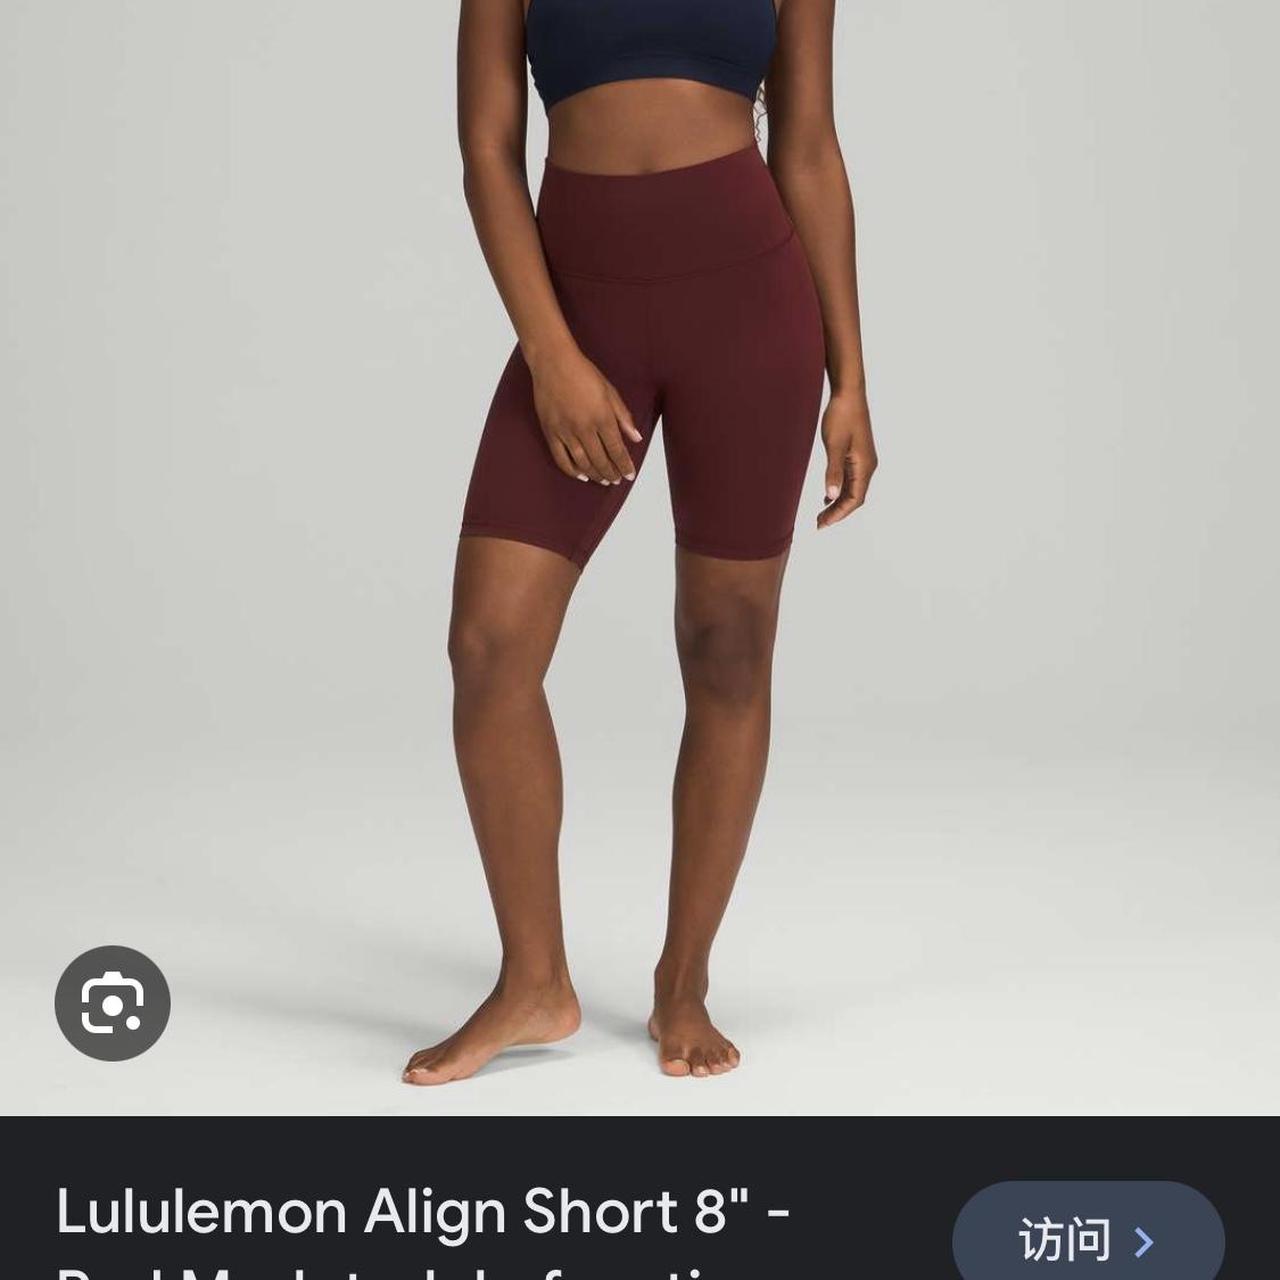 Lily lemon 8” align short leggings Size 2 Barely worn - Depop